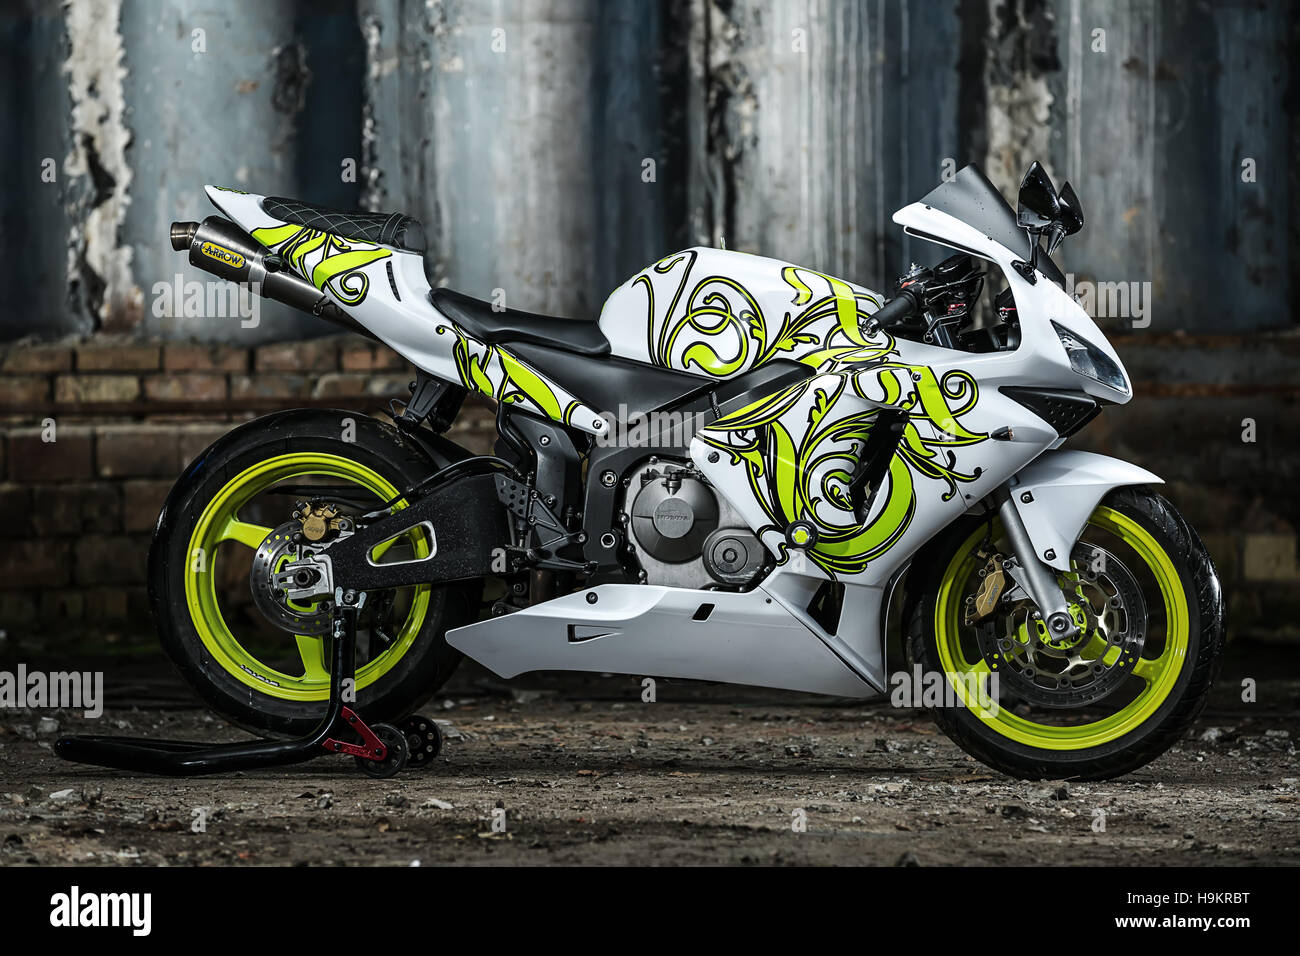 Honda sport motorbike tuning Stock Photo - Alamy